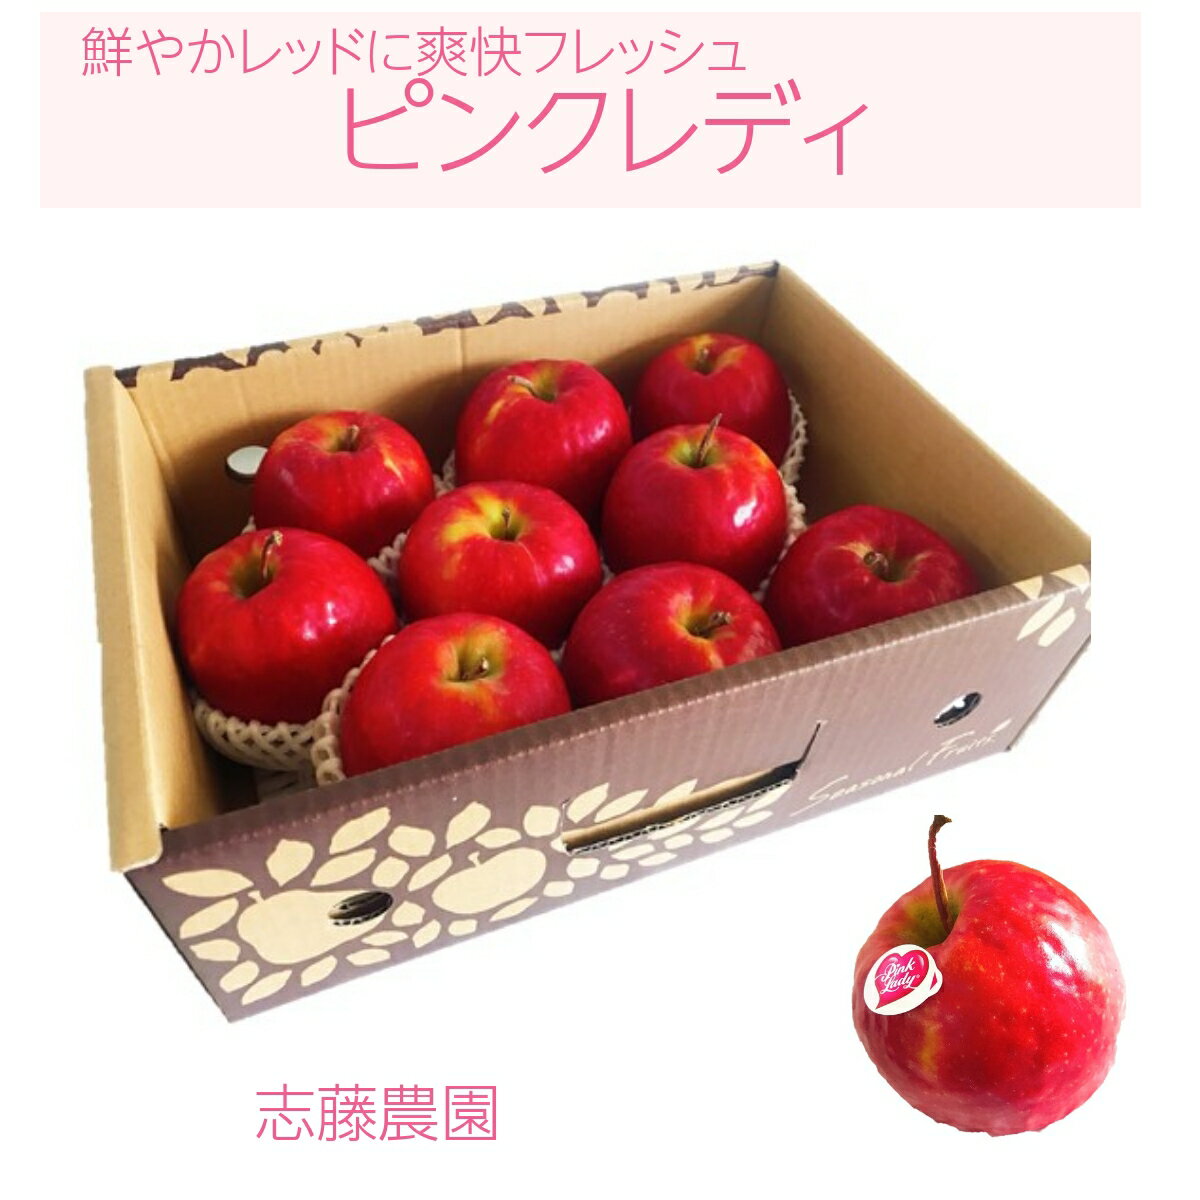 りんご 【志藤農園】 小玉りんご ピンクレディ ...の商品画像